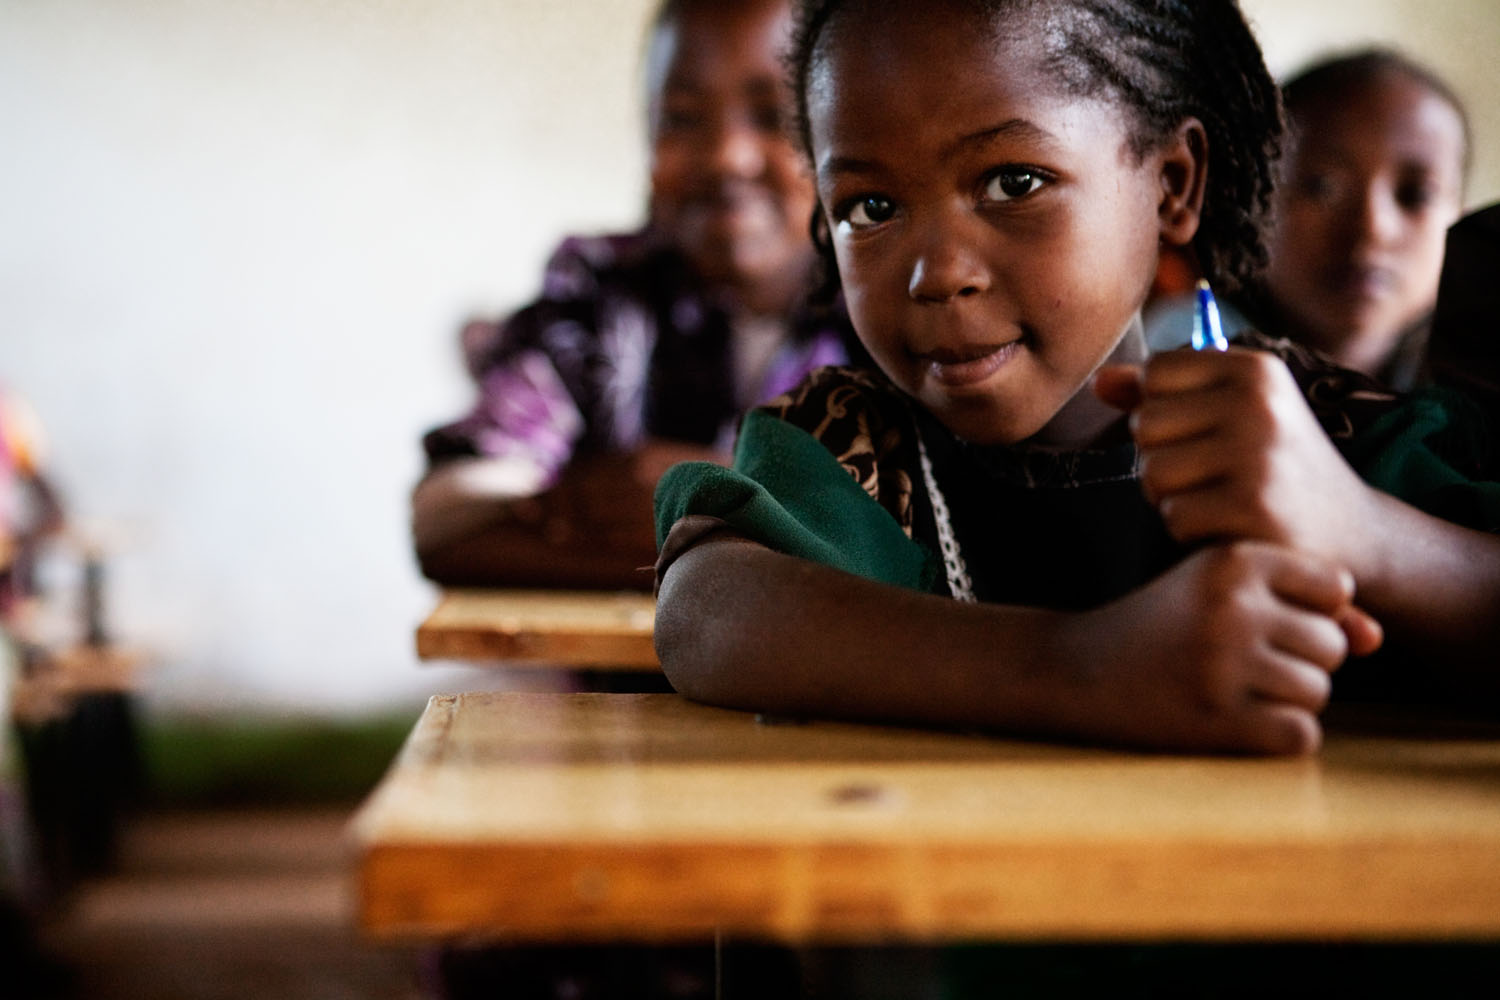 Etiopialainen koulutyttö istuu luokassa kynä kädessä. Merkkipäivälahjoitus tukee lapsen oikeutta koulutukseen.